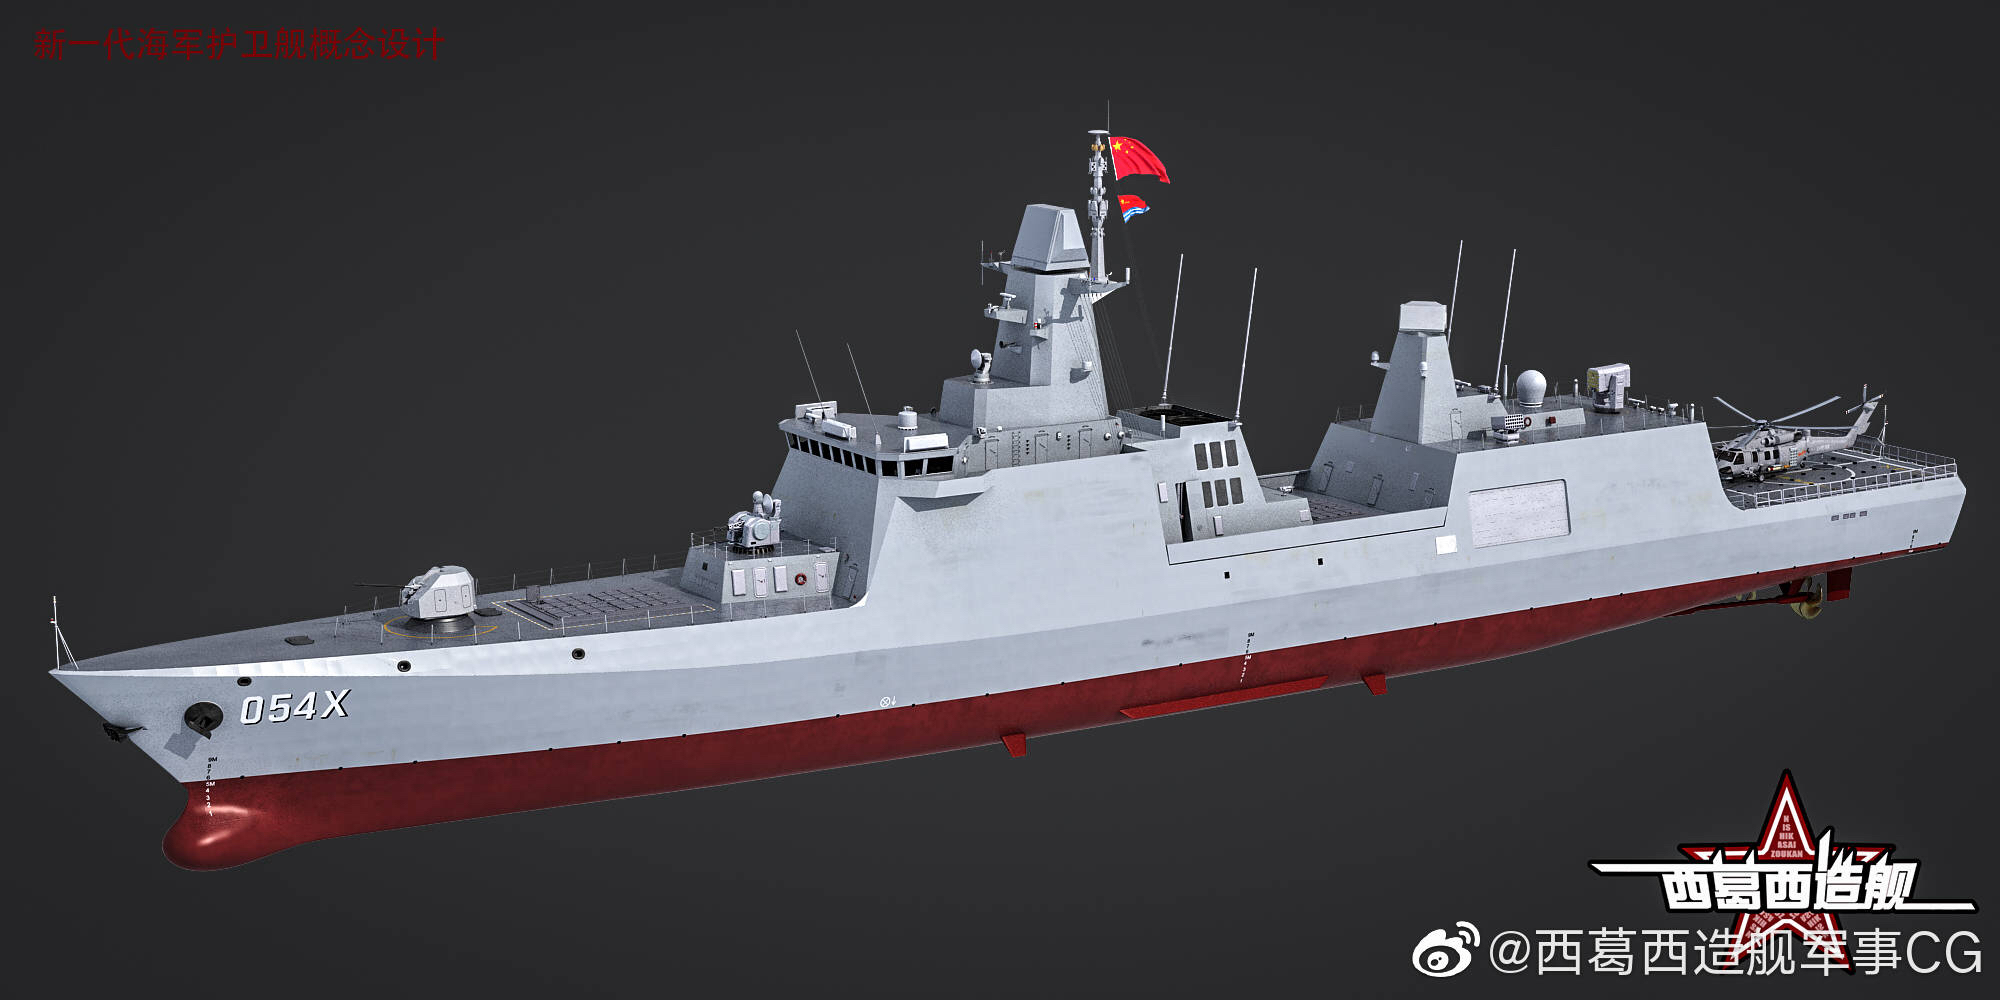 054b054x型护卫舰外形预测